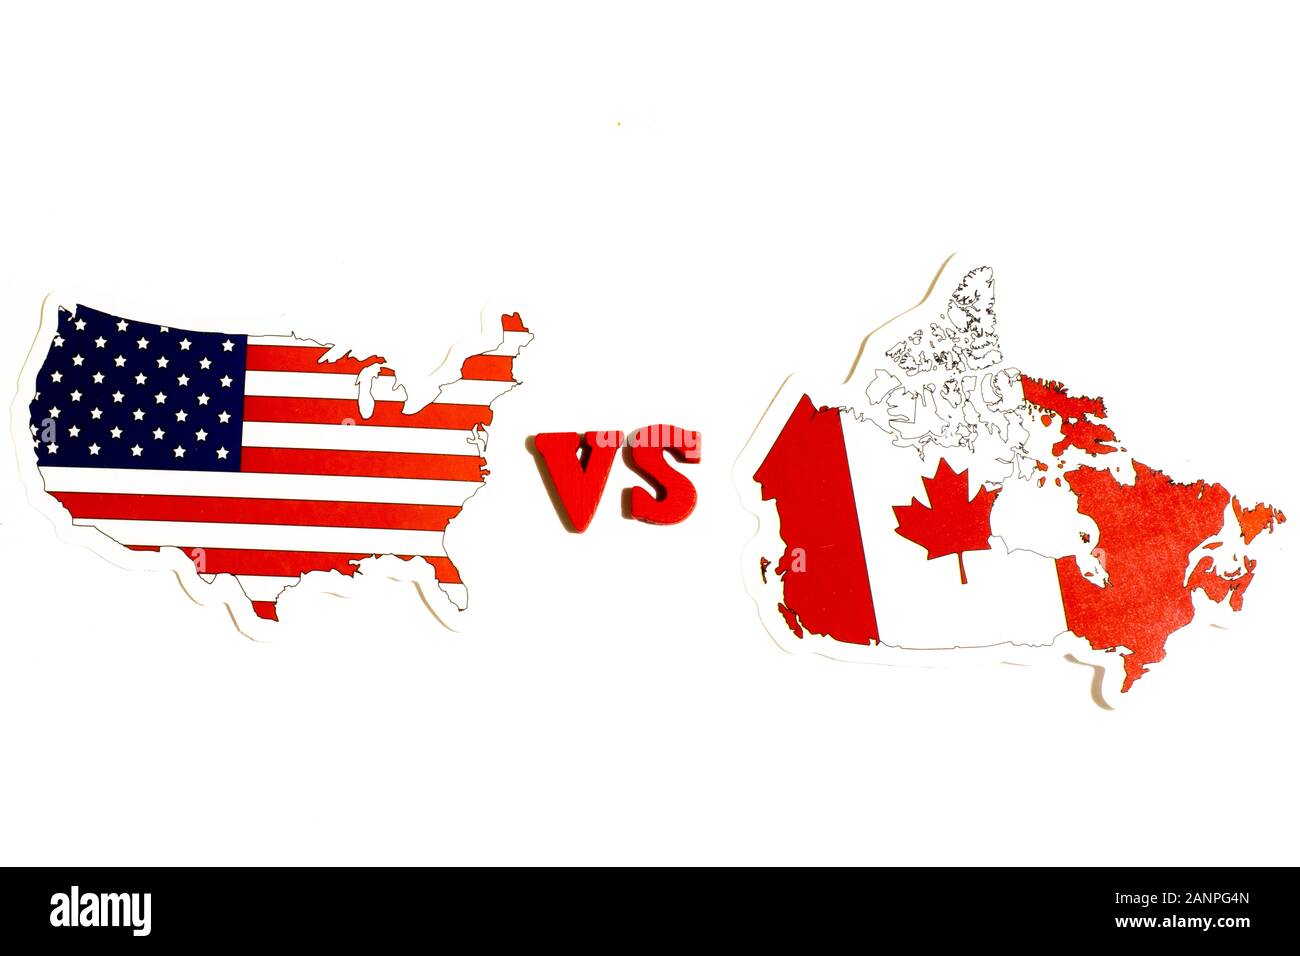 Los Angeles, Californie, États-Unis - 17 janvier 2020: Les États-Unis contre le Canada concept. Drapeau national du pays sur fond blanc, éditorial illustratif Banque D'Images